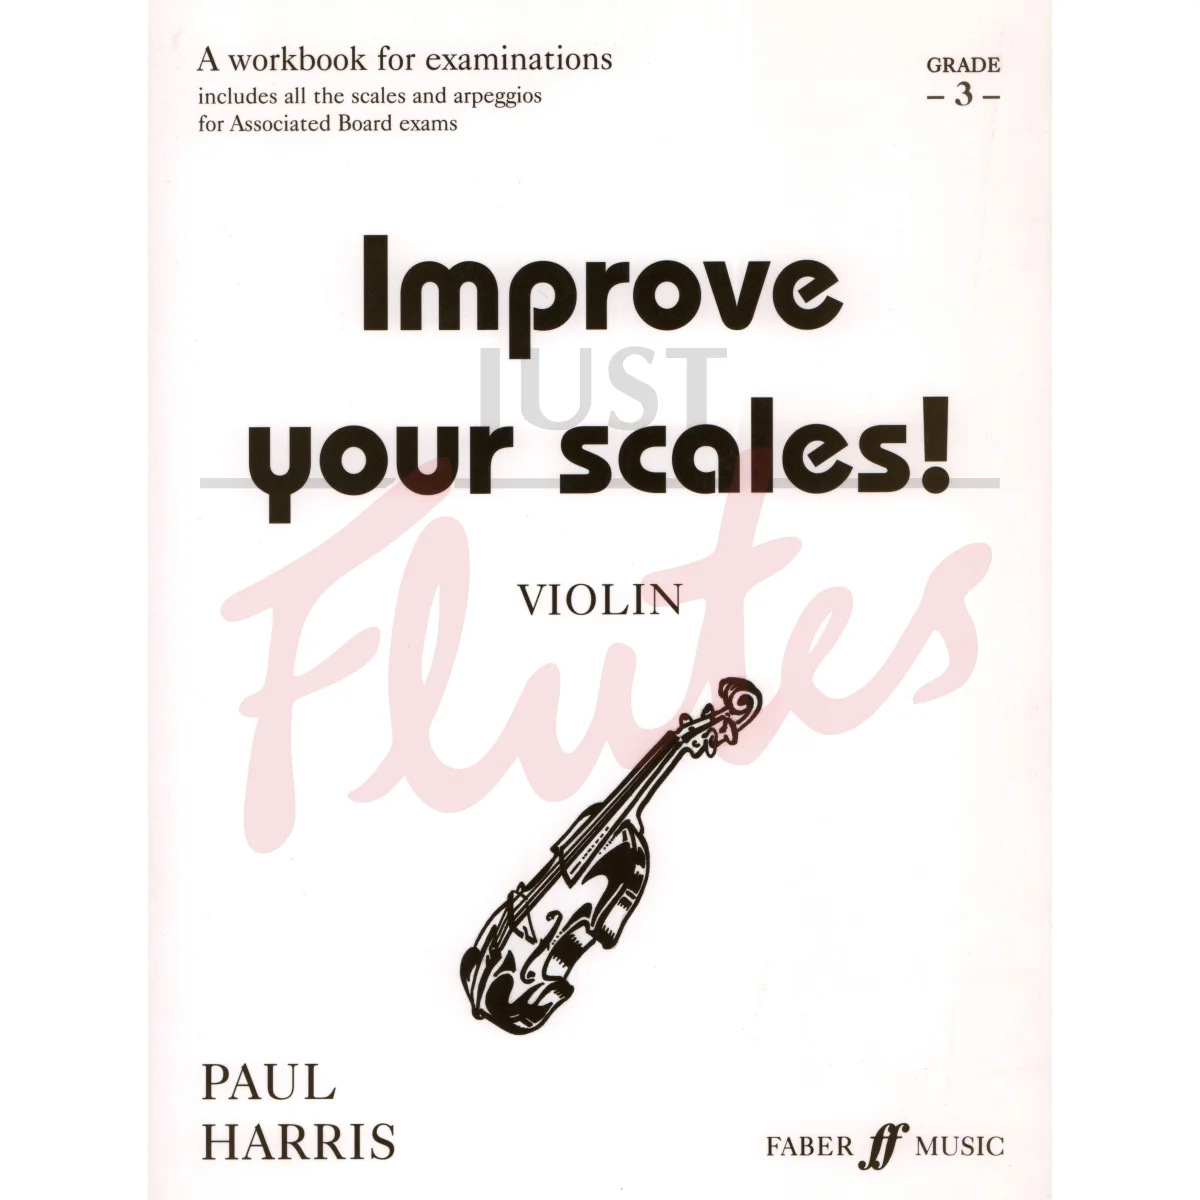 Improve Your Scales! [Violin] Grade 3